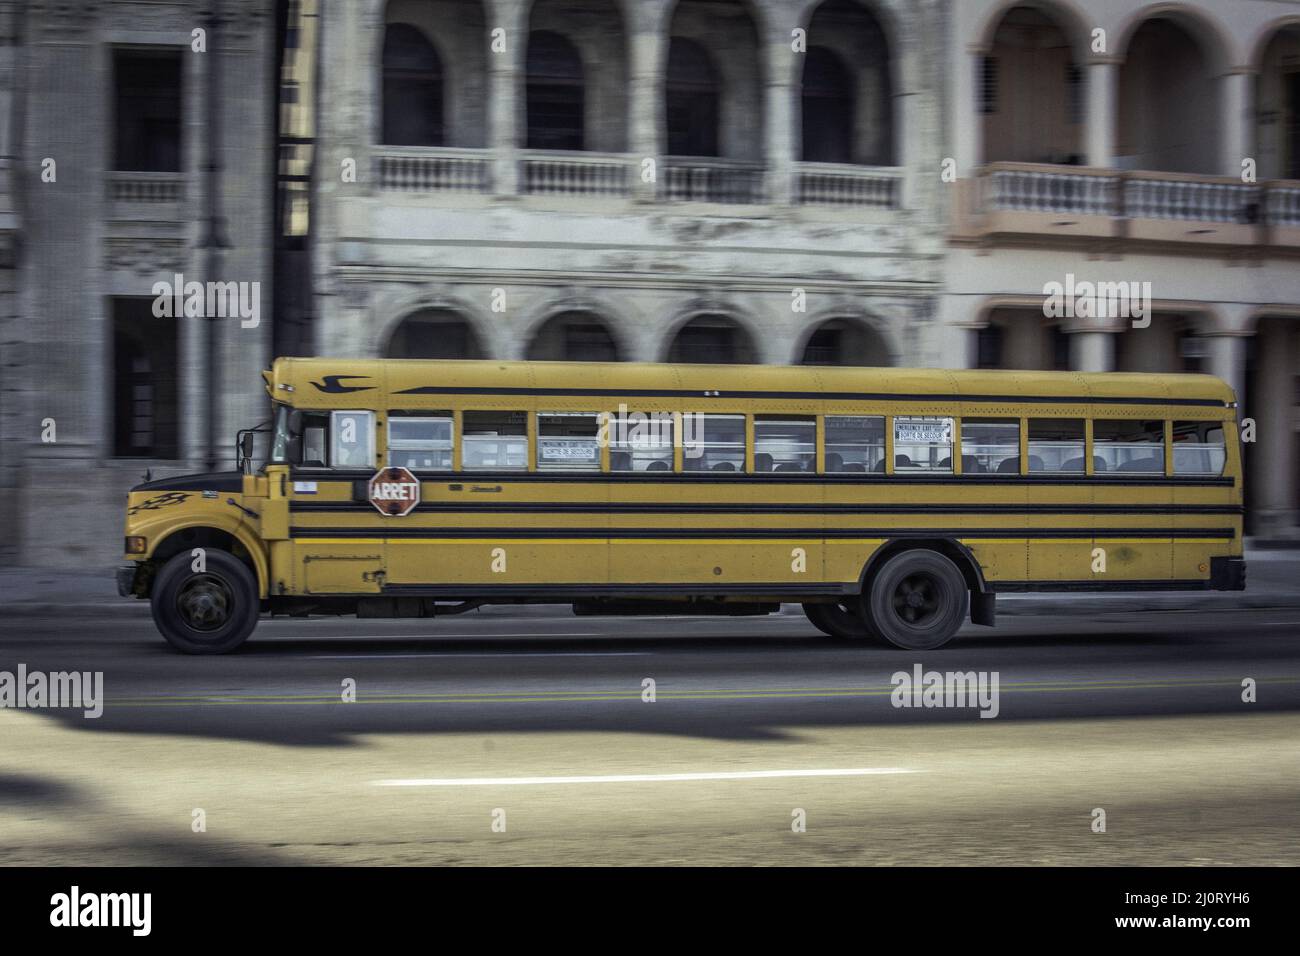 Il tipico bus scolastico giallo americano in strada è il modello internazionale 3800 S1700. La Habana, Cuba Foto Stock